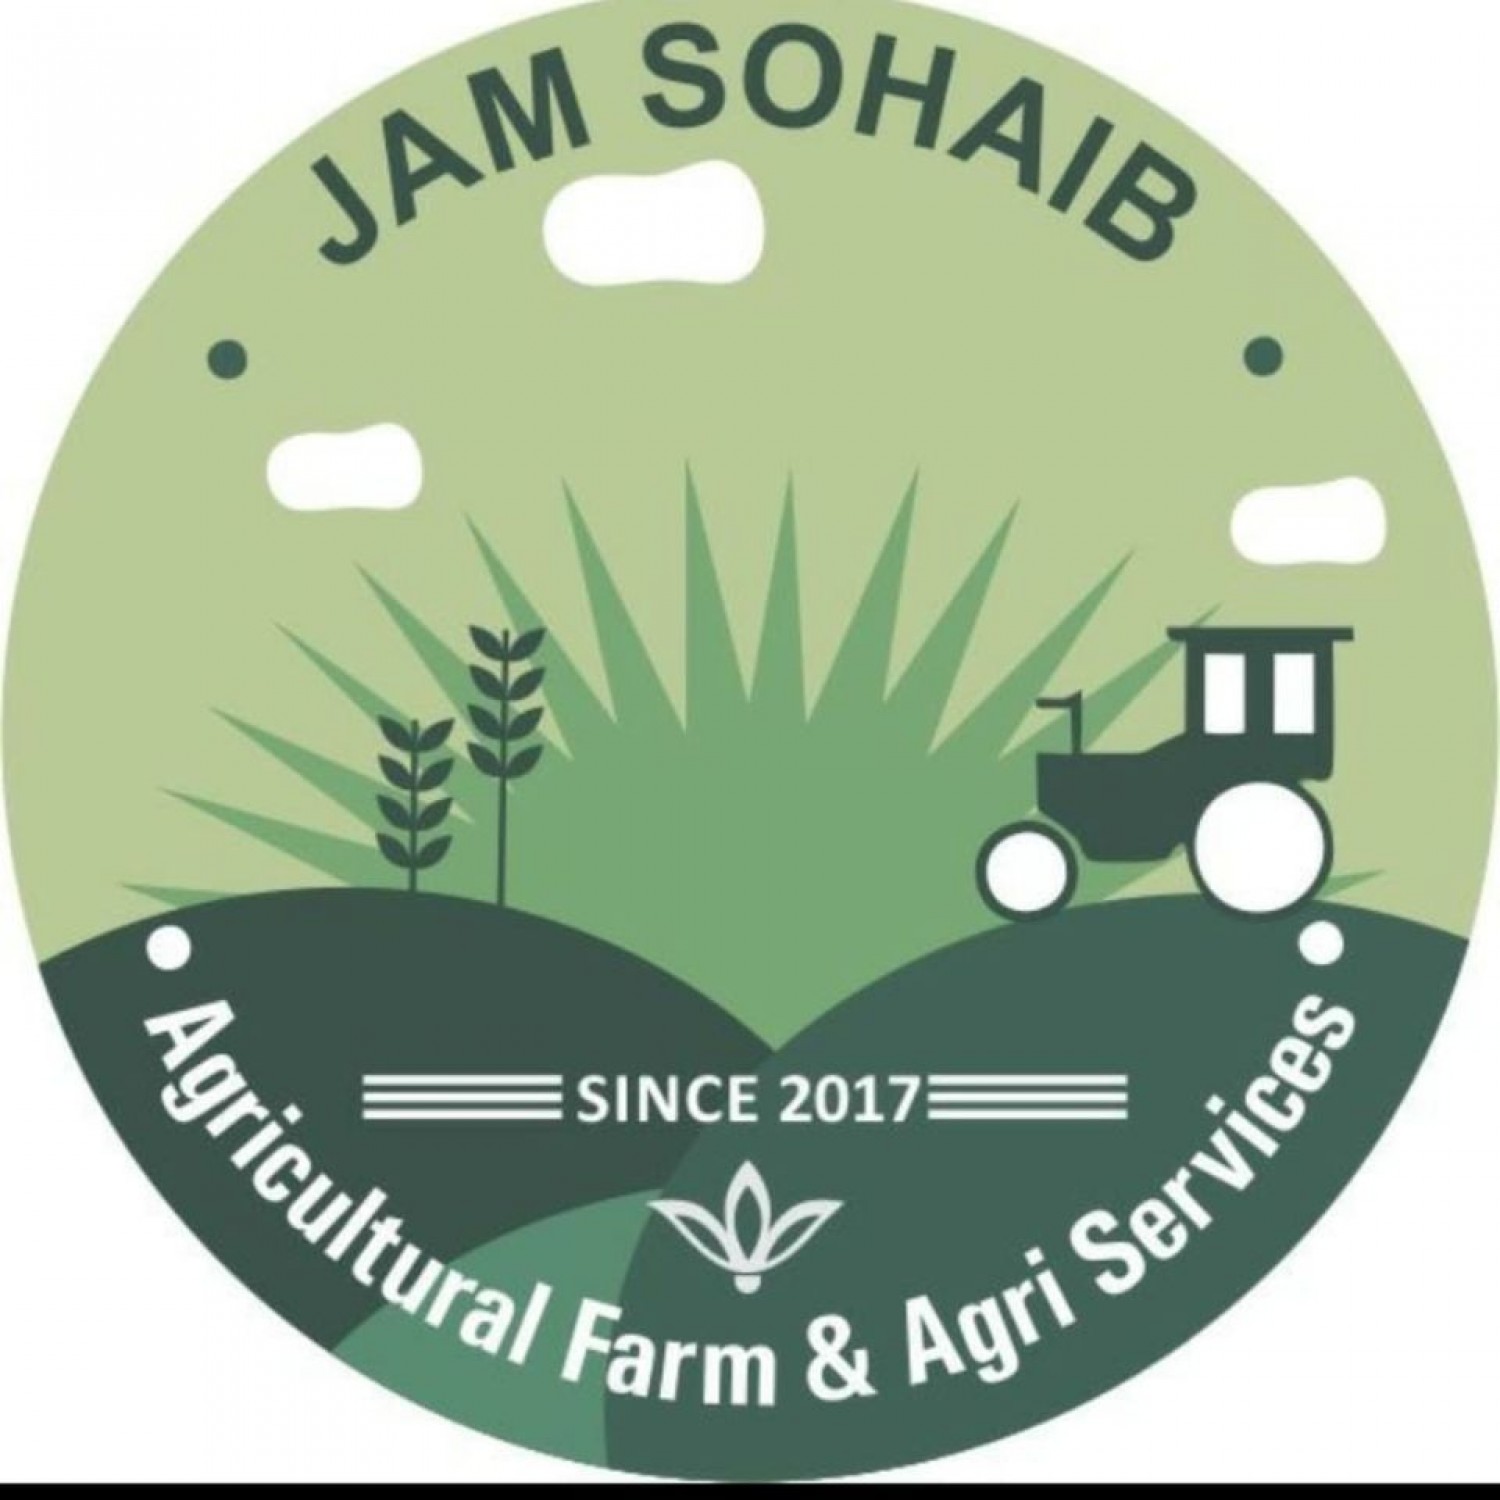 Jam Sohaib Agricultural Farm and Agri Services